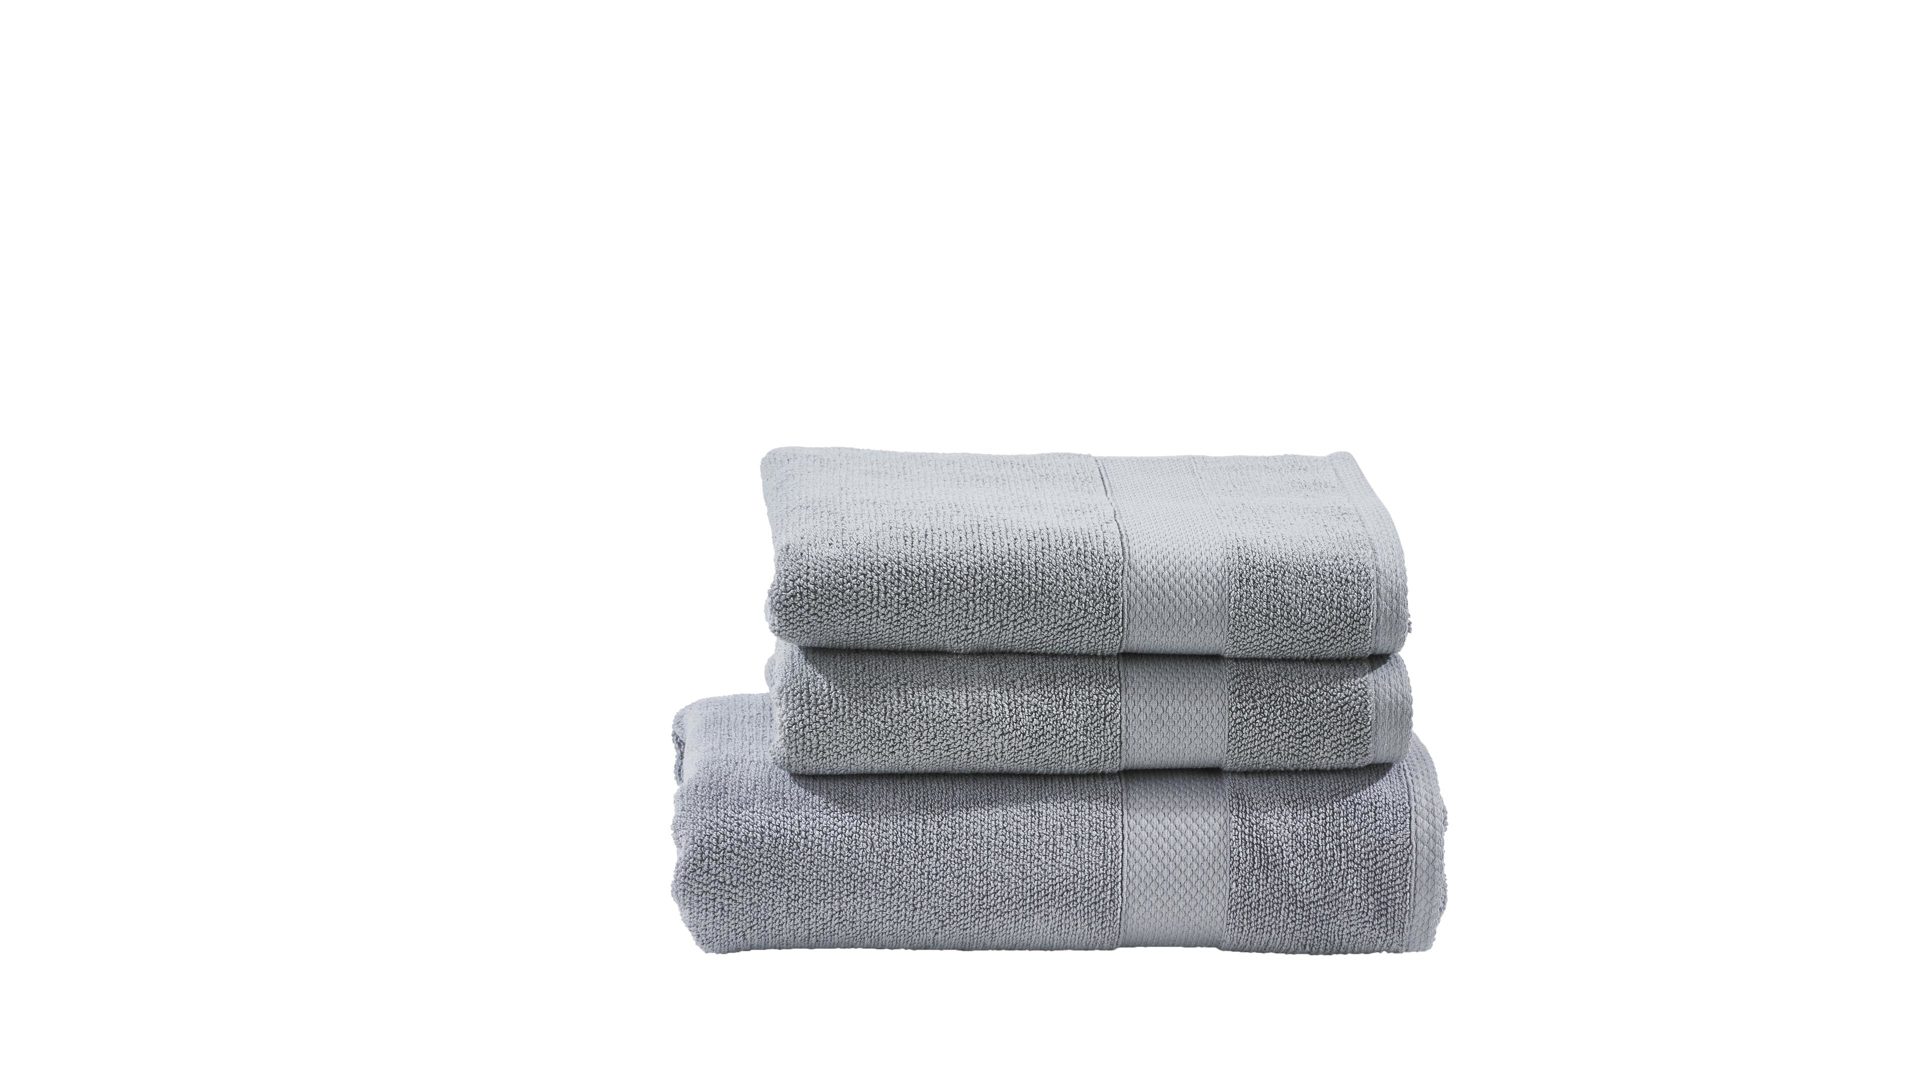 Handtuch-Set Done by karabel home company aus Stoff in Grau done Handtuch-Set Deluxe silberfarbene Baumwolle  – dreiteilig